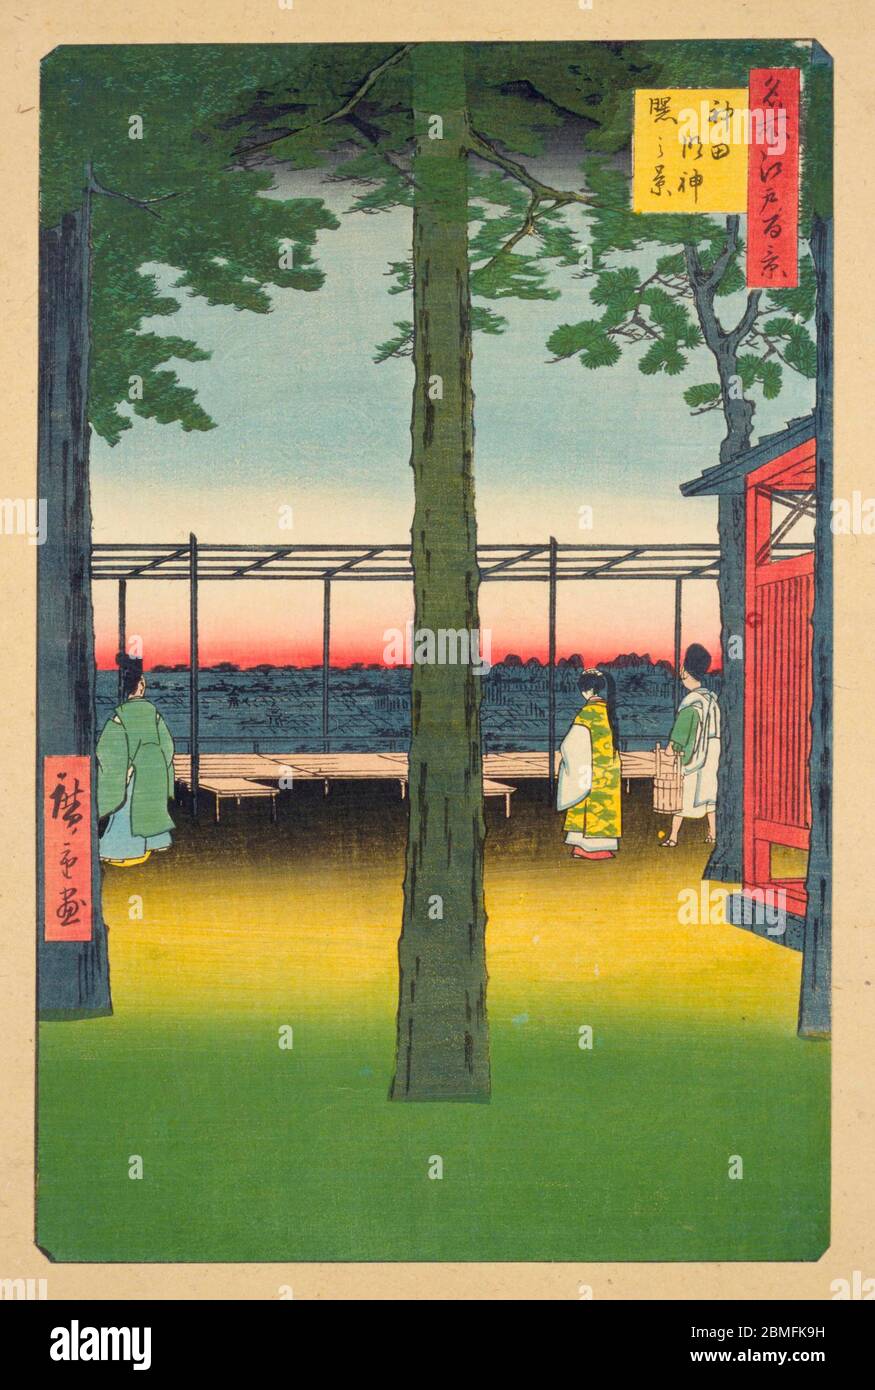 [ 1850er Japan - Den Sonnenaufgang in Tokio beobachten ] - Menschen, die den Sonnenaufgang am Kanda Myojin Shrine in Edo (derzeit Tokio), 1857 (Ansei 4) beobachten. Dieser Holzschnitt ist Bild 10 in hundert berühmten Ansichten von Edo (名所江戸百景, Meisho Edo Hyakkei), einer Serie von Ukiyoe Künstler Utagawa Hiroshige (歌川広重, 1797–1858) erstellt. Es ist eine von 42 Frühlingsszenen der Serie. Titel: Sonnenaufgang im Kanda Myojin Schrein (神田明神曙之景, Kanda Myojin akebono no kei) Vintage Ukiyoe Holzschnitt aus dem 19. Jahrhundert. Stockfoto